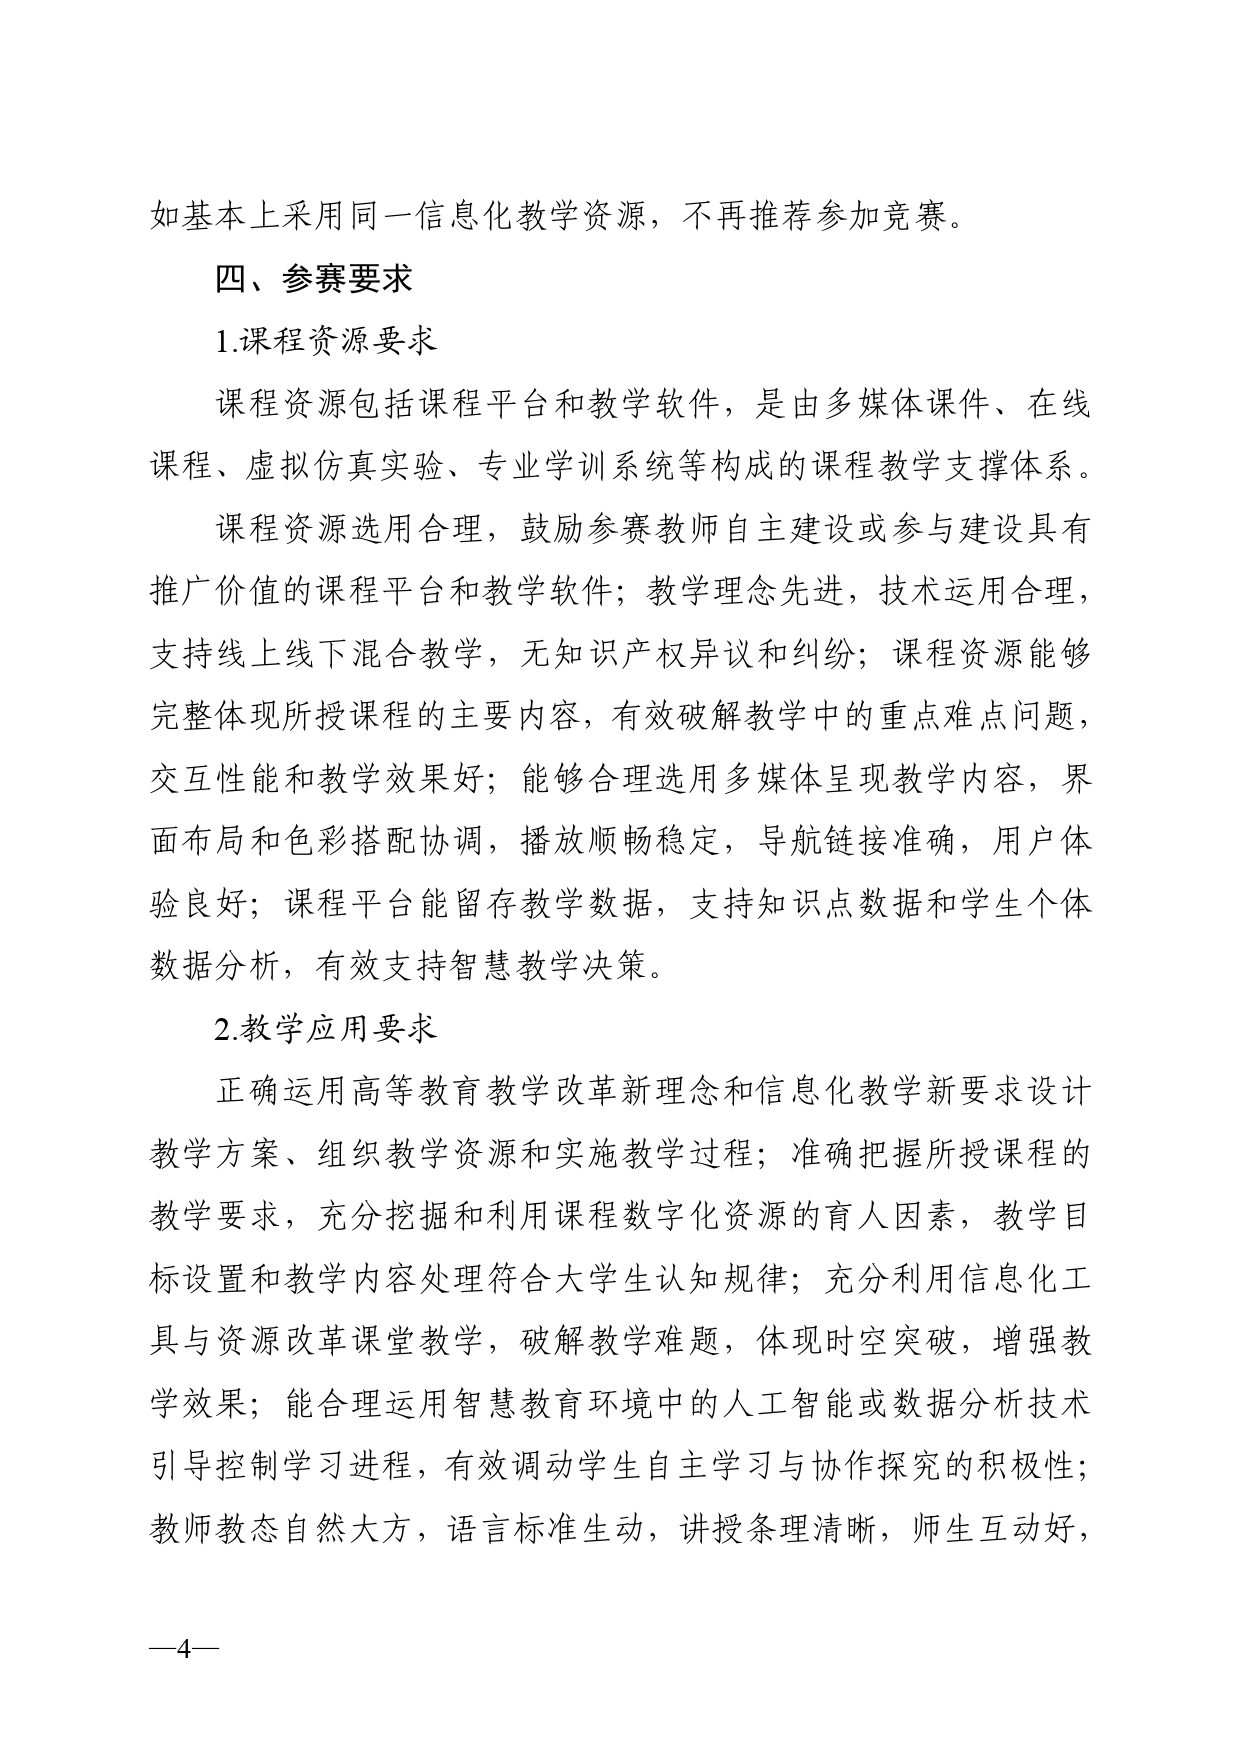 关于开展2023年湖南省普通高校教师信息化教学竞赛的通知正文(1)_page-0004.jpg